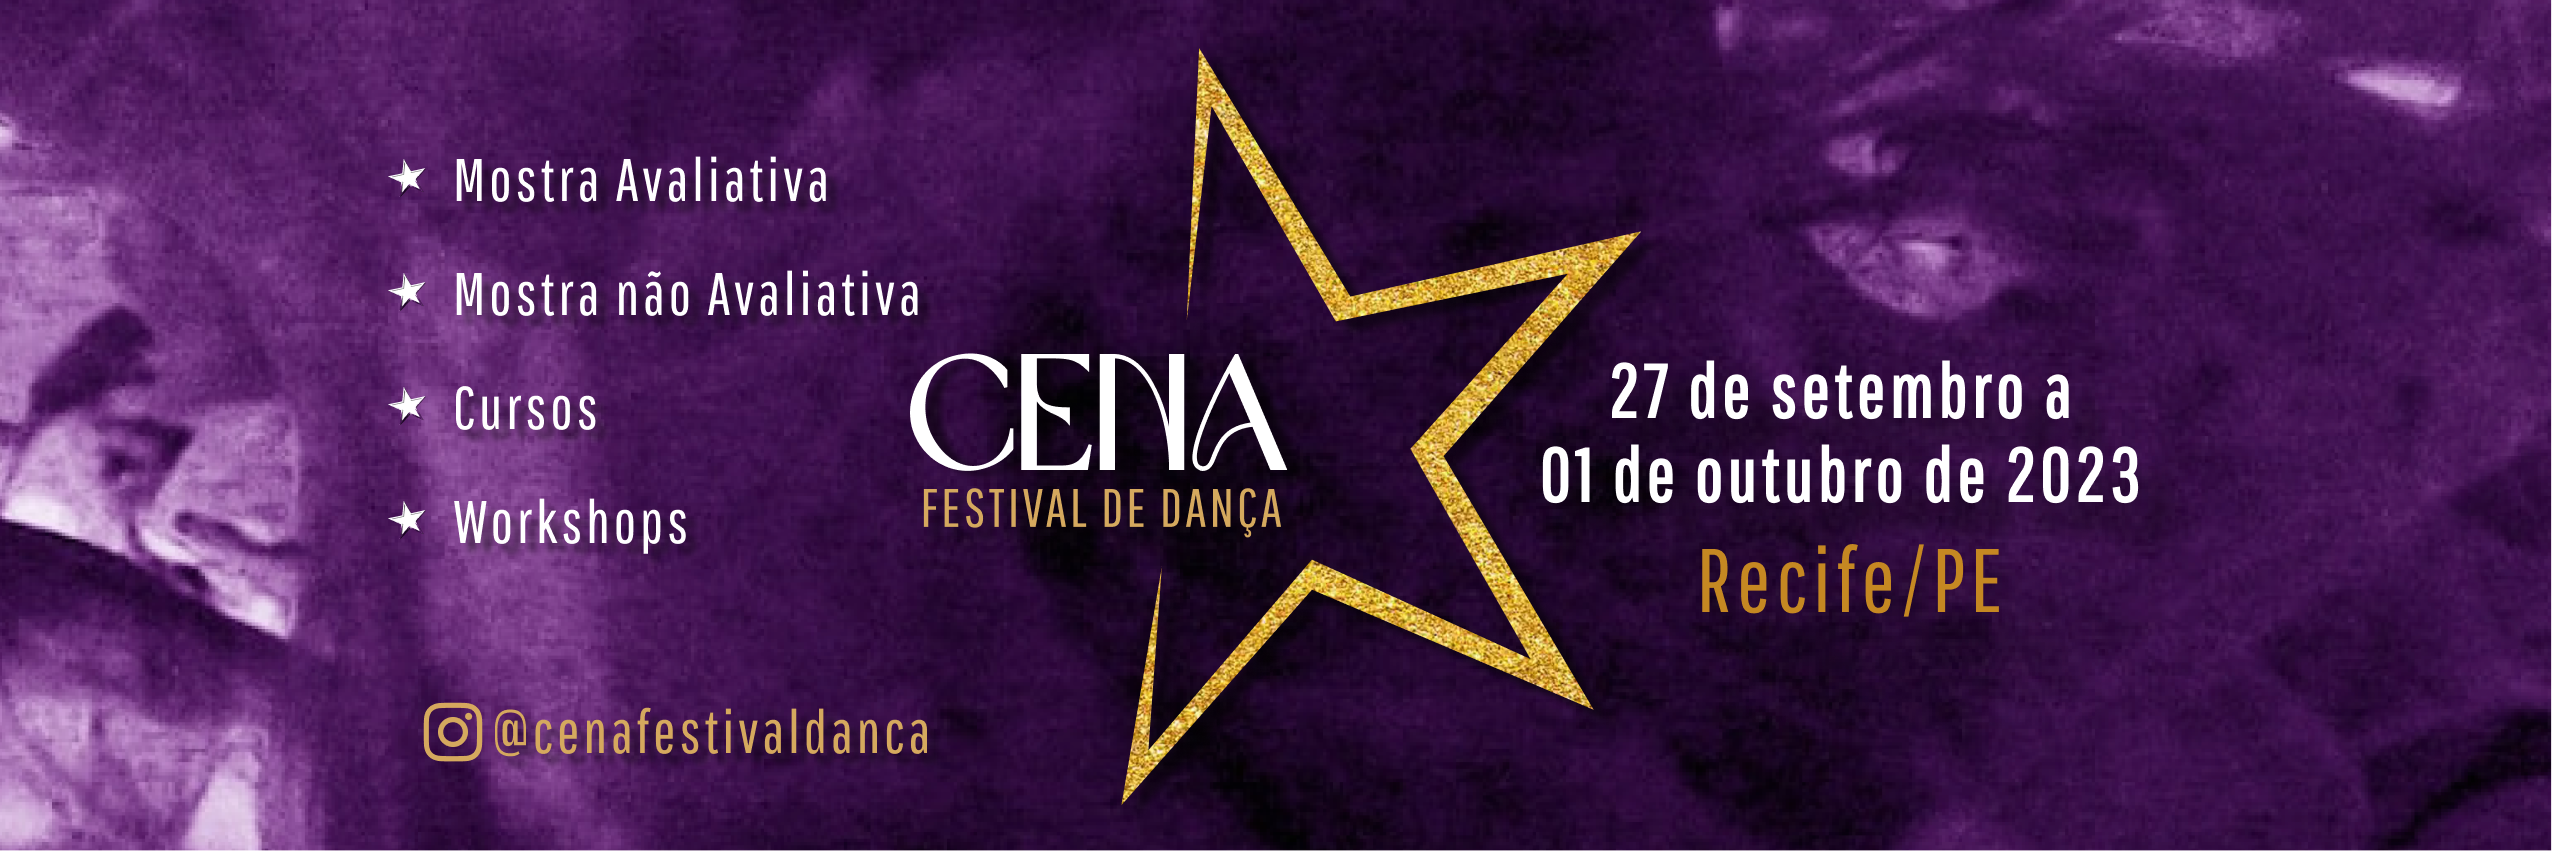 Cena Festival de Dança